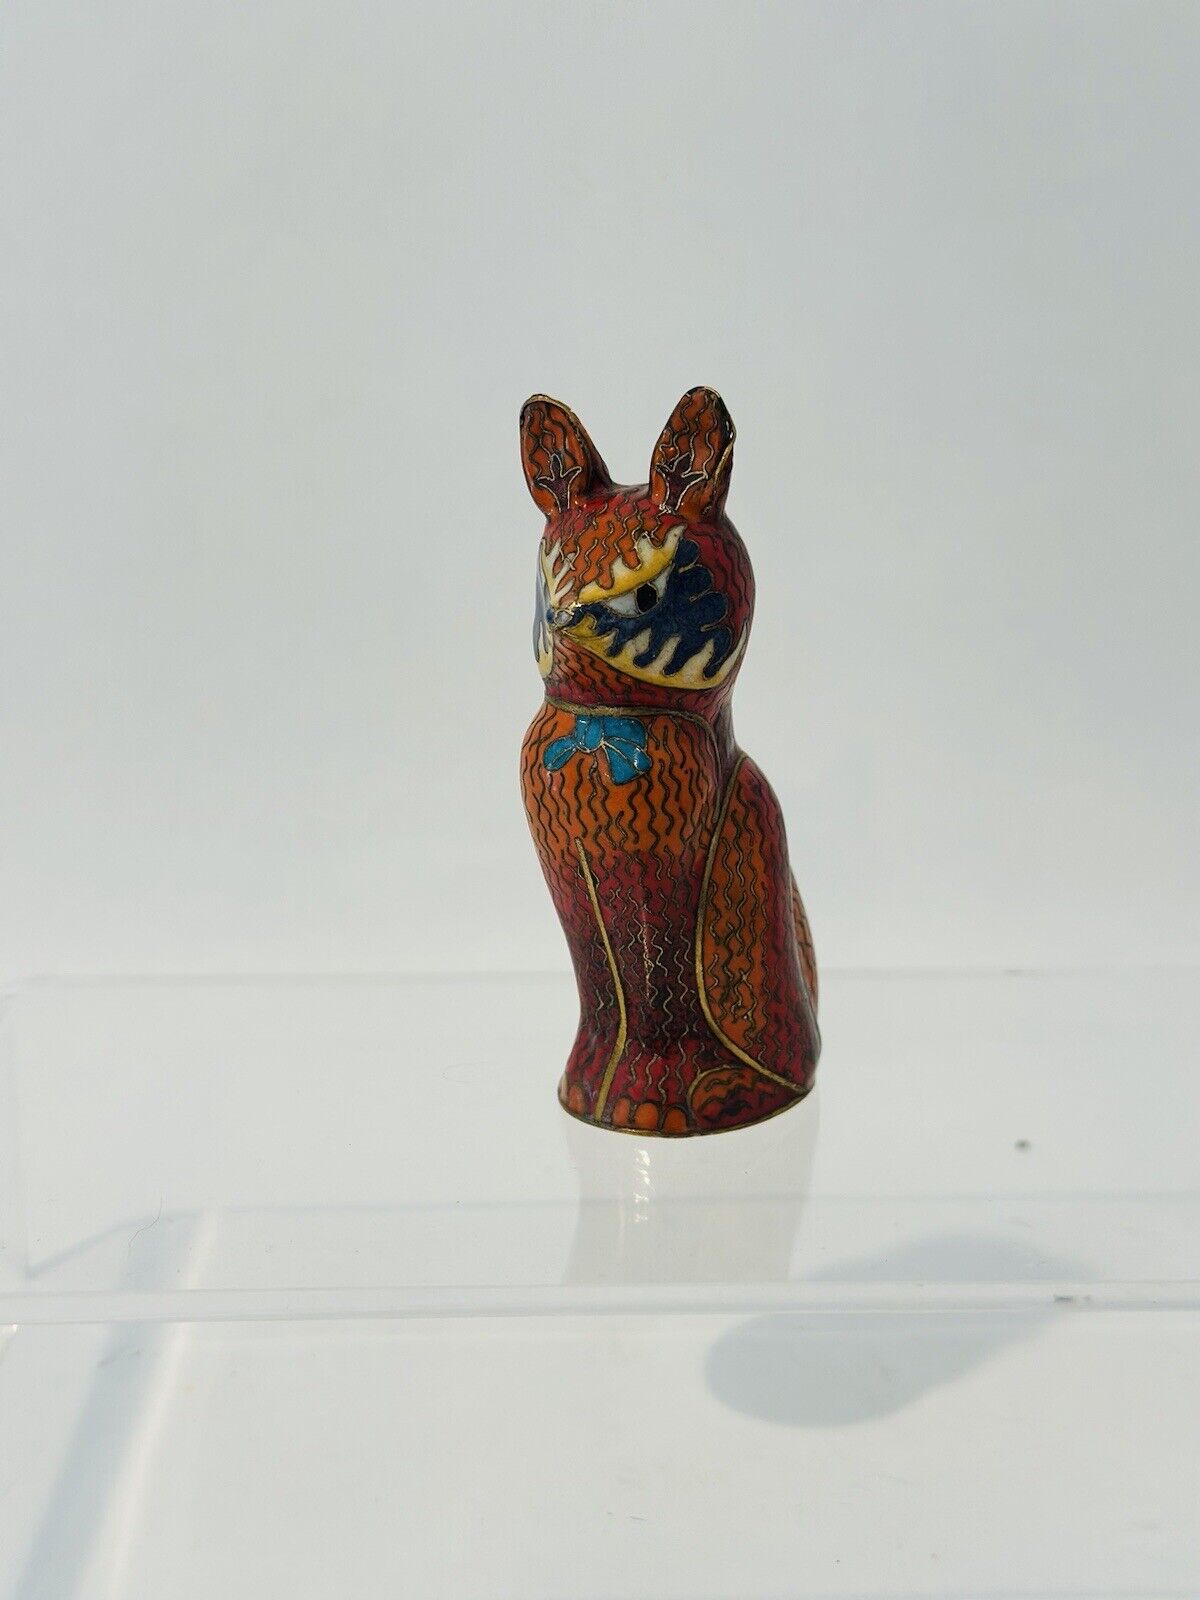 Vintage Enamel Cloisonne Sitting Cat Fox Figurine Multicolor 3.5”T